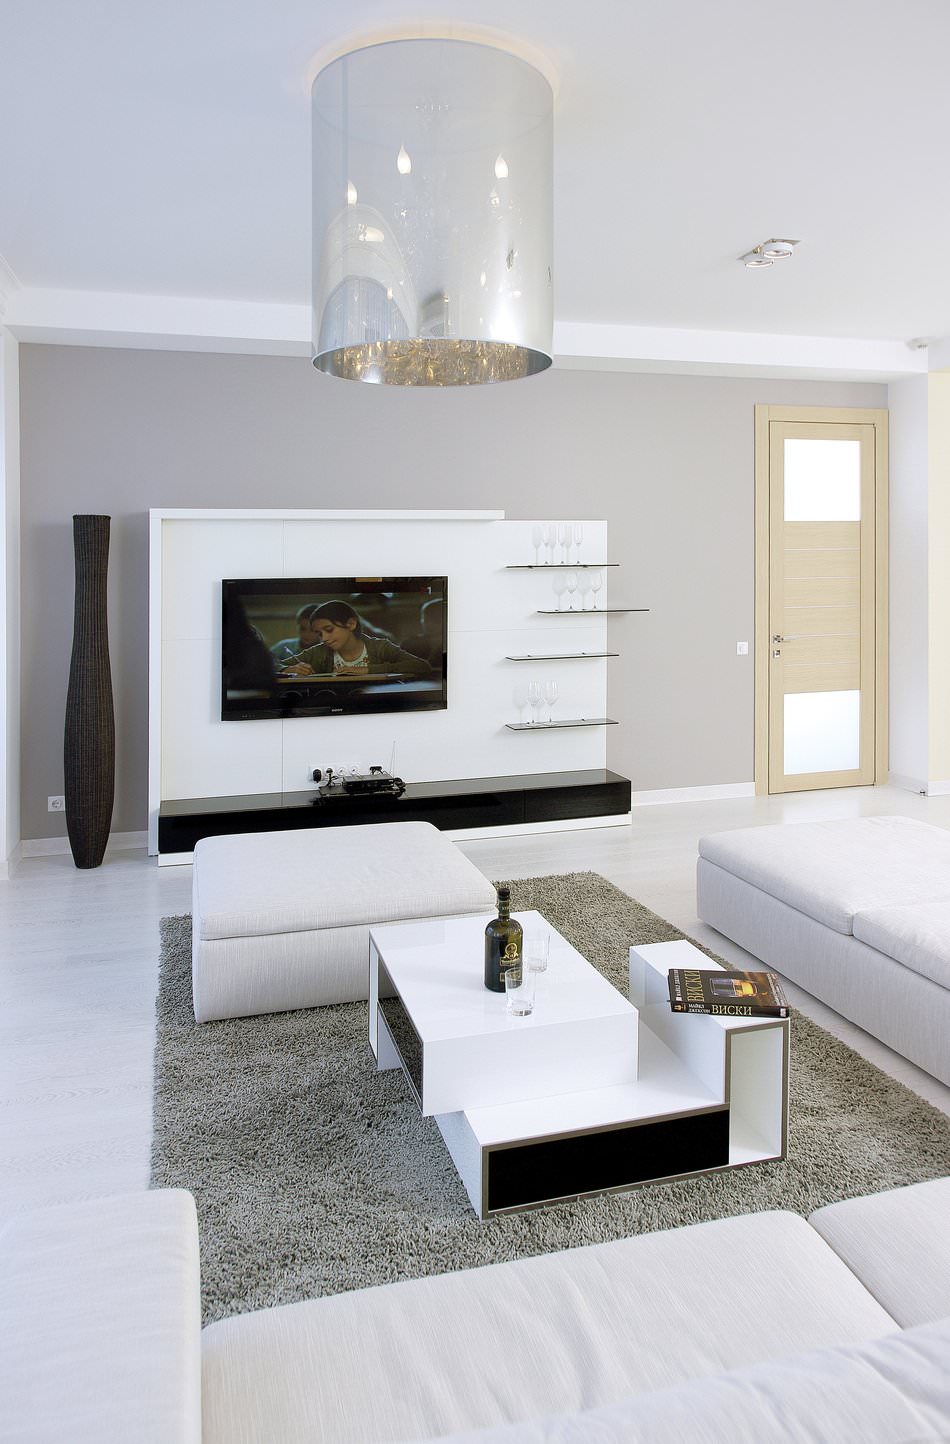 Diseño interior moderno de un apartamento al estilo minimalista.